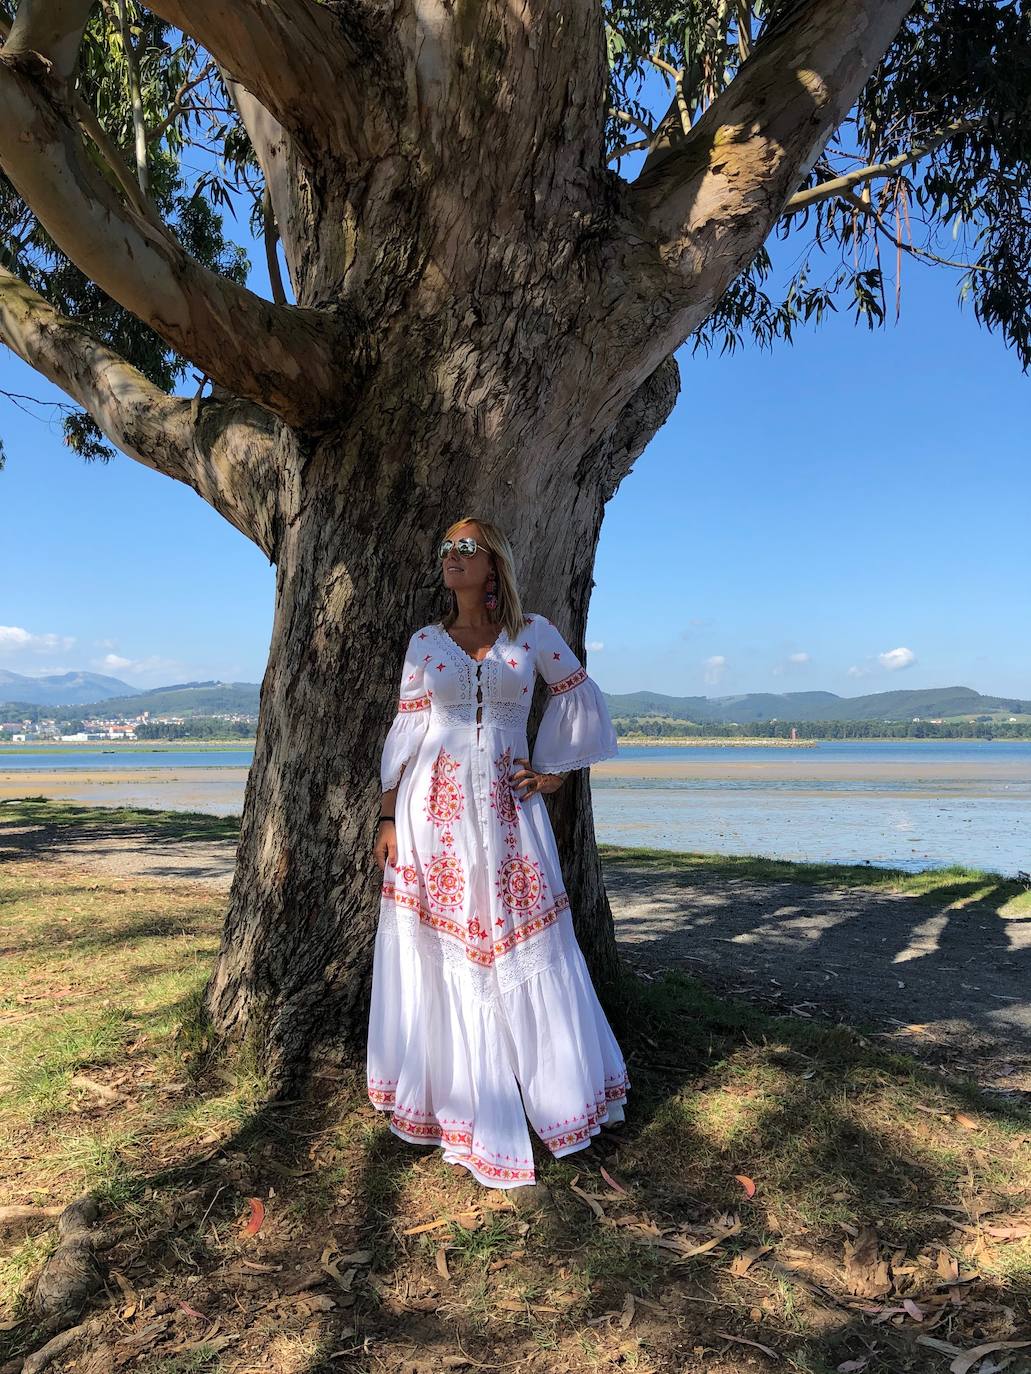 La marca de ropa de Ruth Vilda, Luna Maga Ibiza, fusiona la tradición artesanal y el encanto de África, Asia y Oriente con el espíritu hippie de la isla balear. Aquí cuatro vestidos especiales y muy románticos diseñados por ella